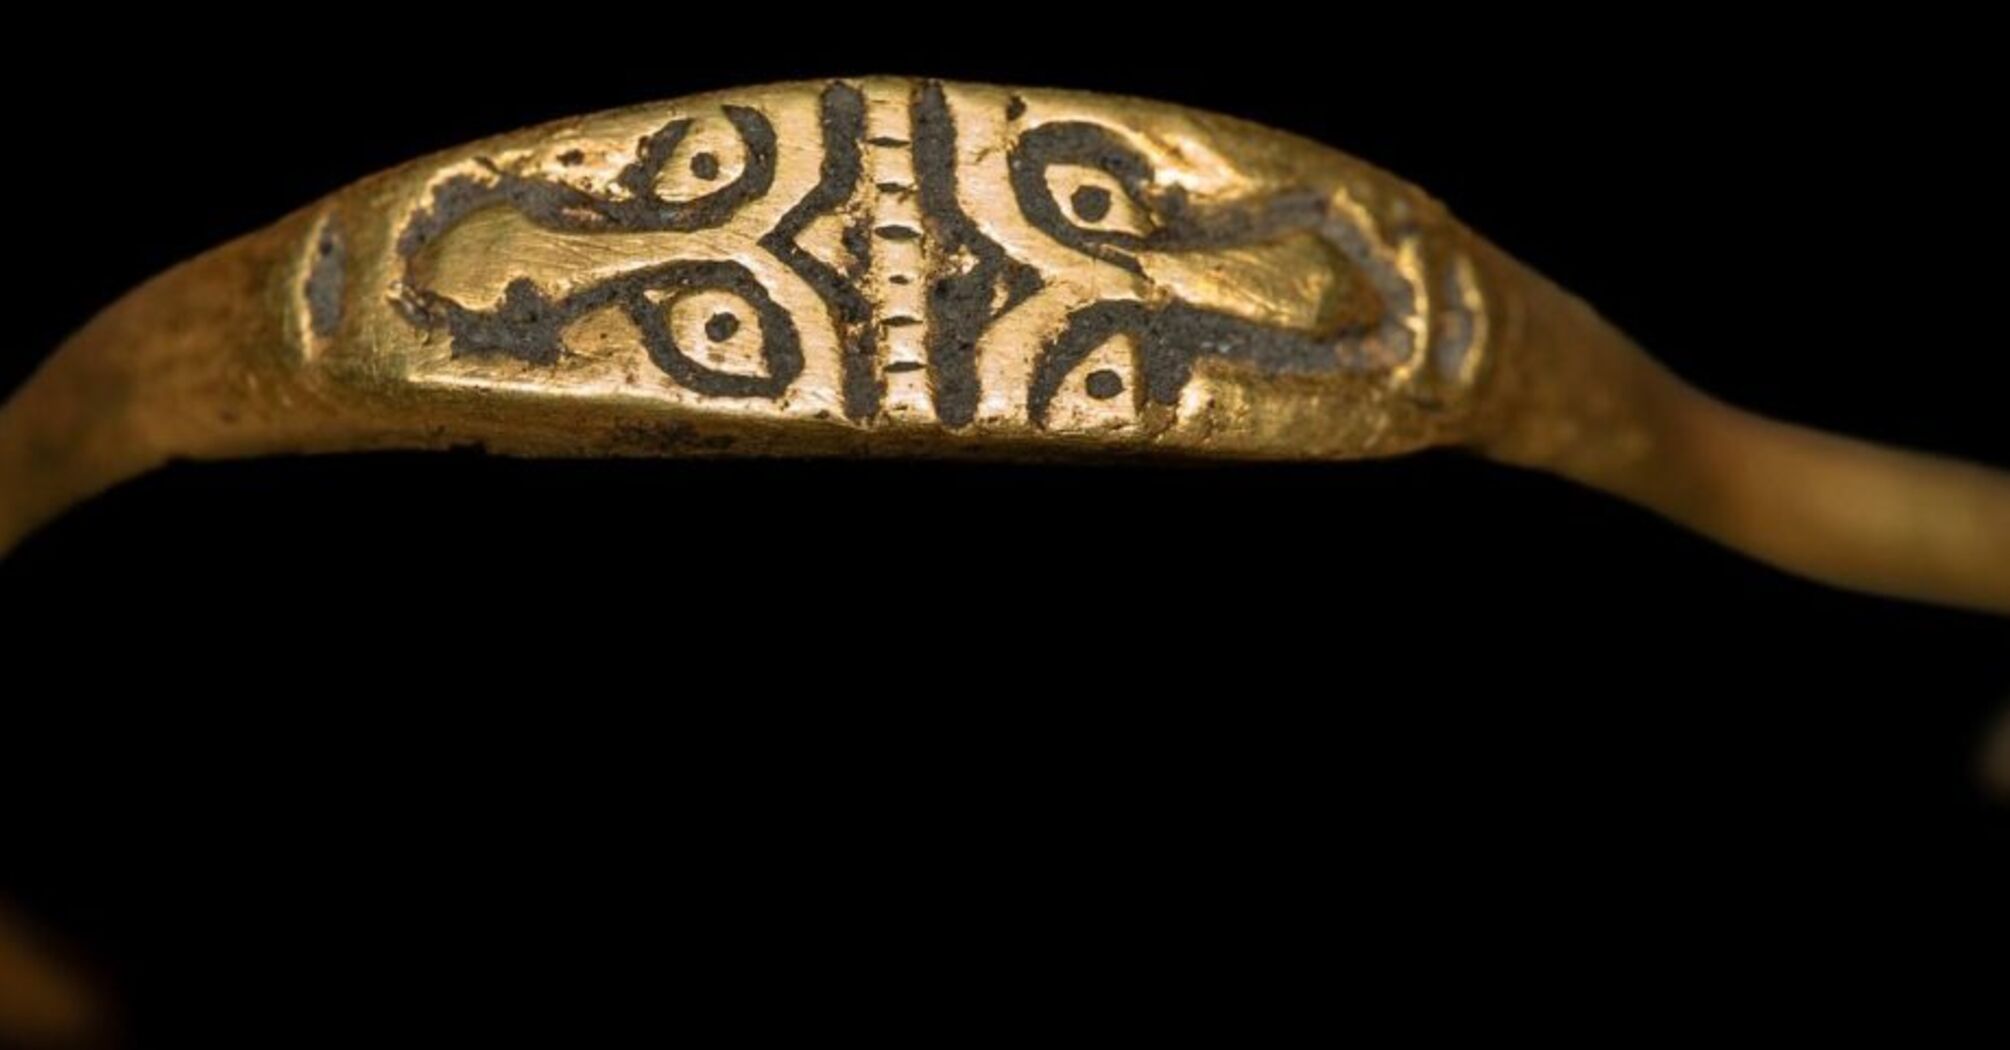 Unikalny złoty pierścionek o dwóch twarzach znaleziony w Polsce (foto)